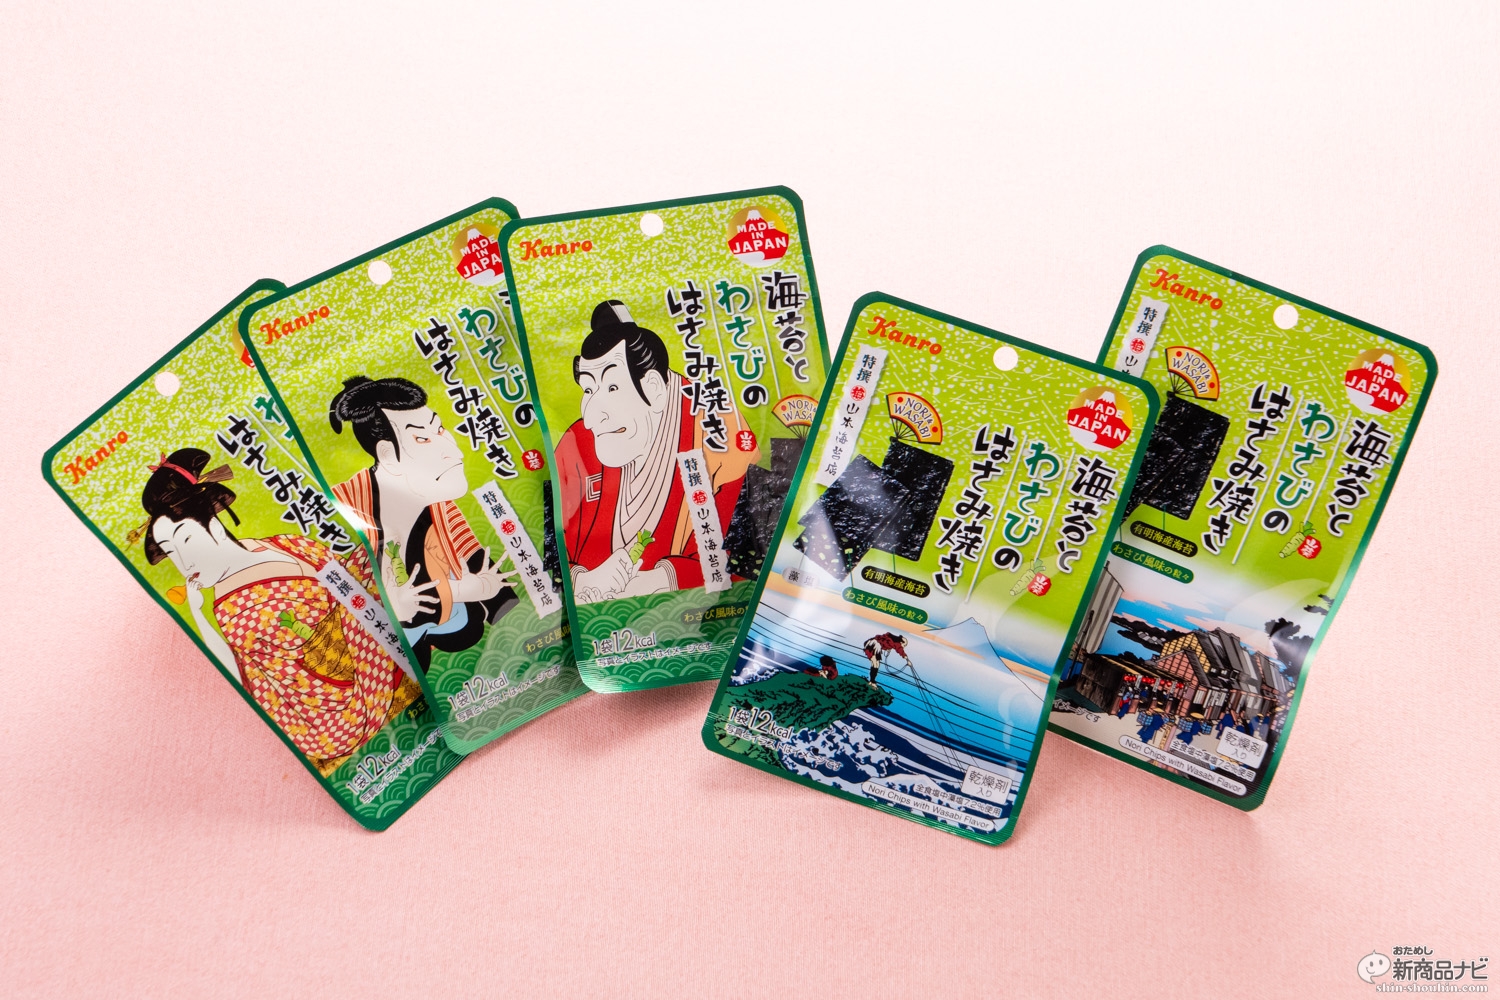 おためし新商品ナビ Blog Archive これぞ ニッポンのおやつ 海苔が主役 のカンロ 海苔のはさみ焼き シリーズがクセになる美味さ